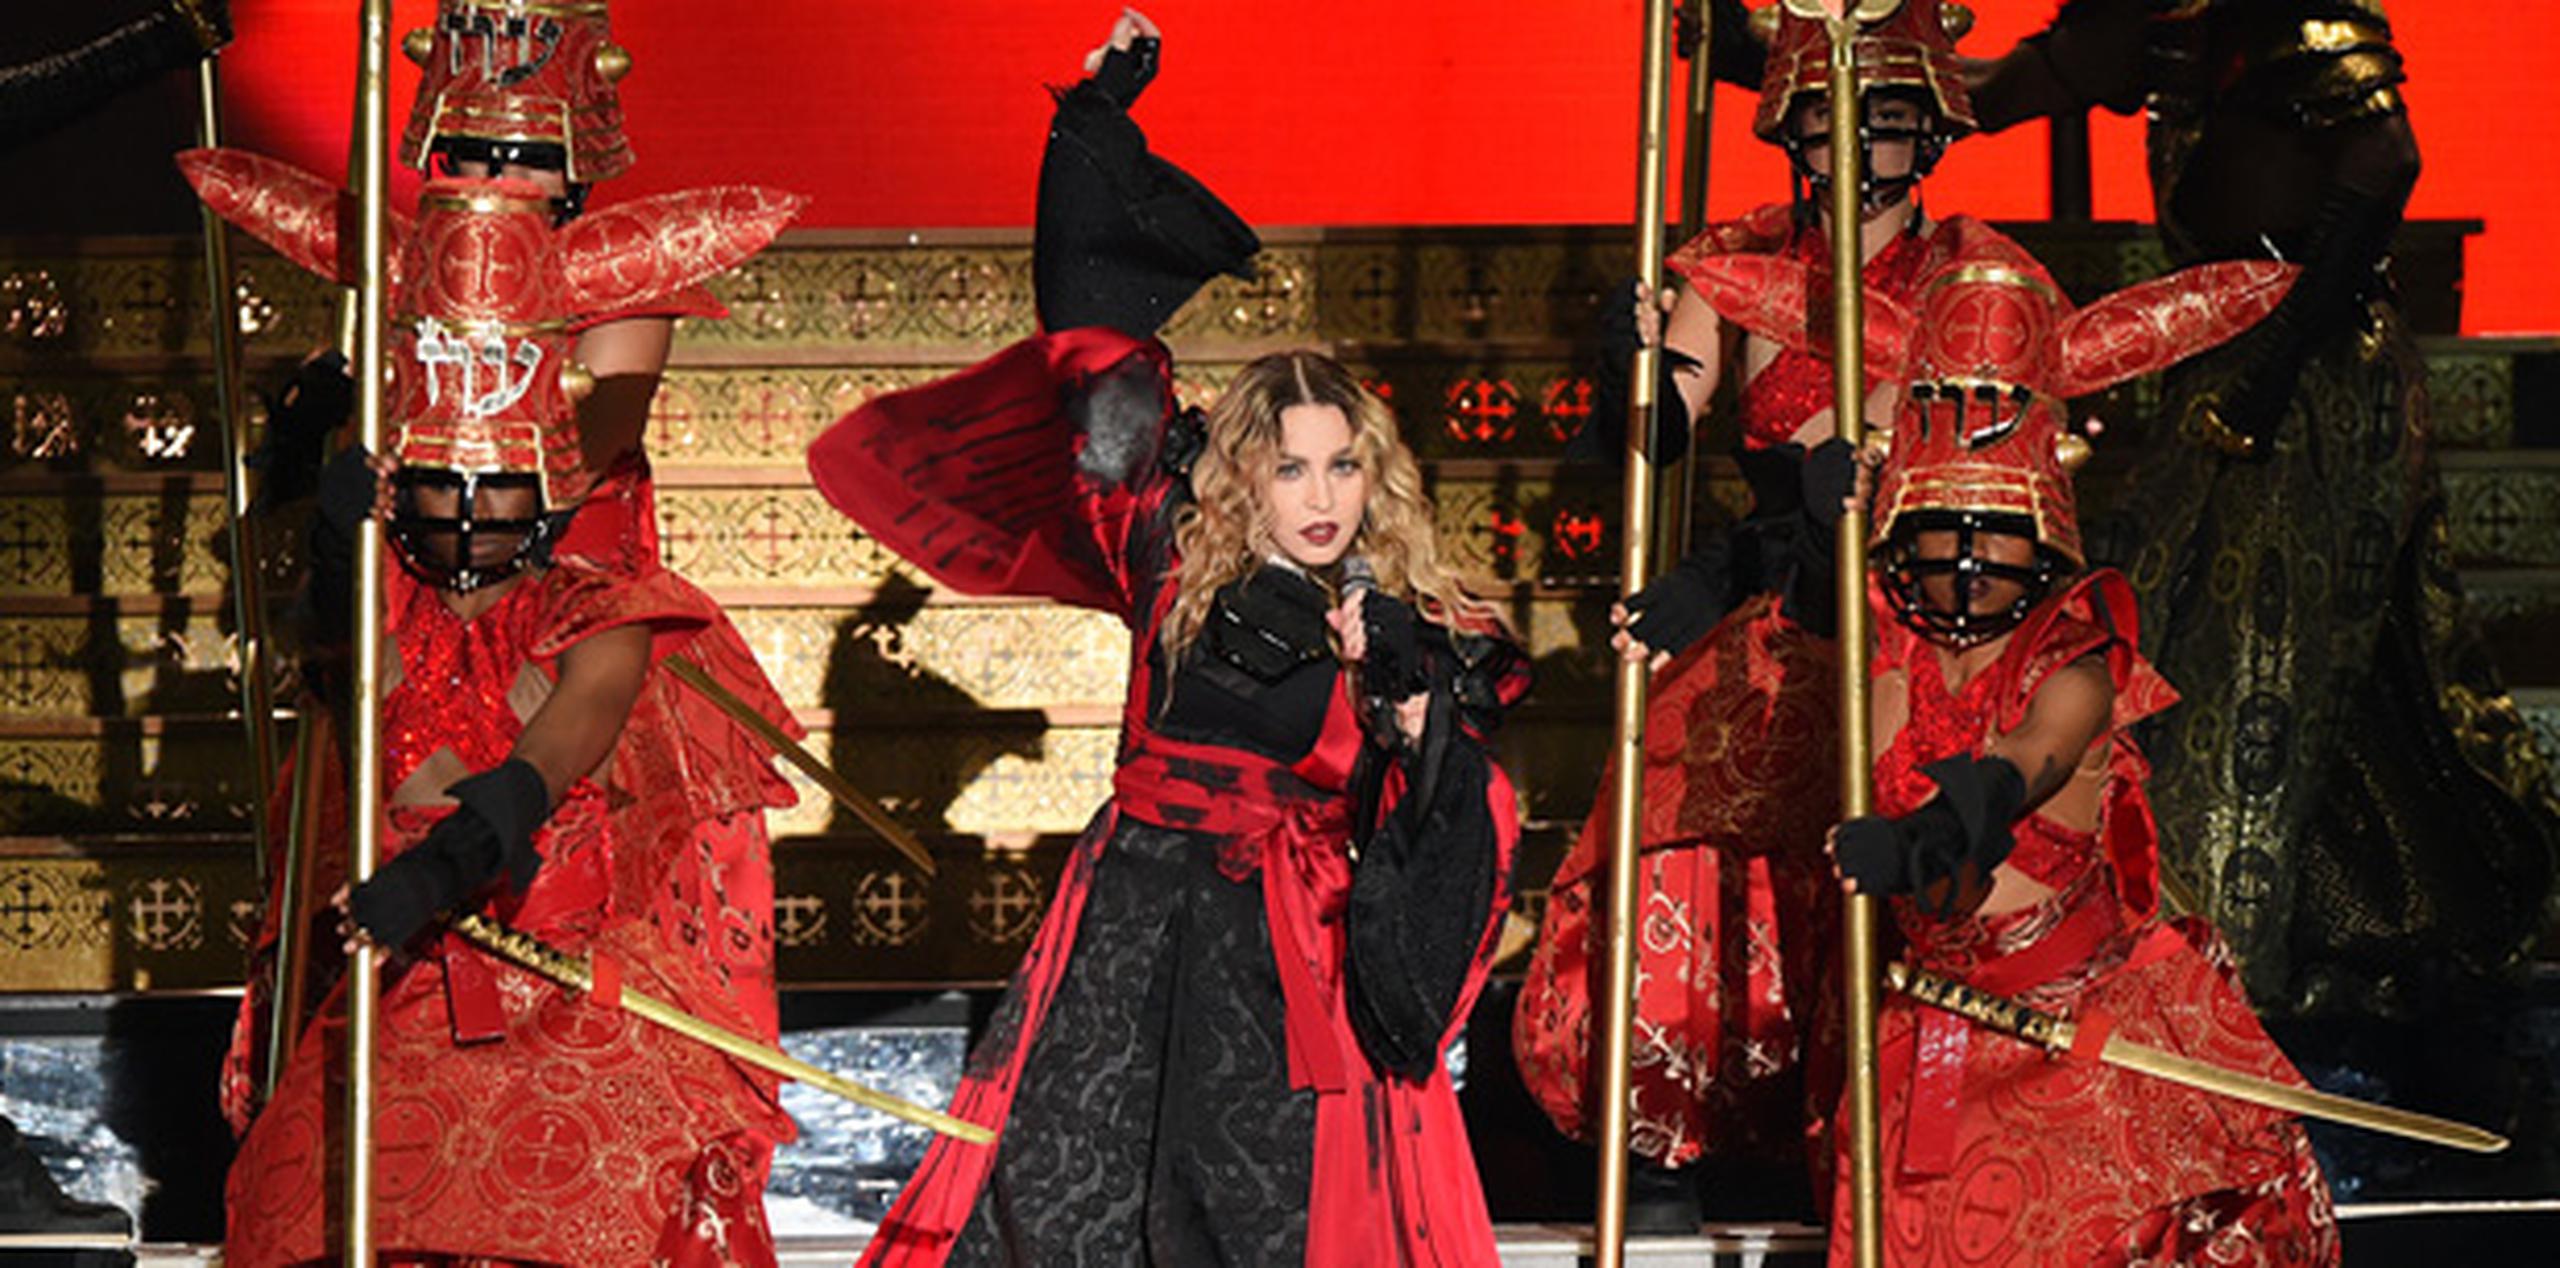 El concierto de Madonna comenzó tres horas más tarde de lo pautado. (andre.kang@gfrmedia.com)